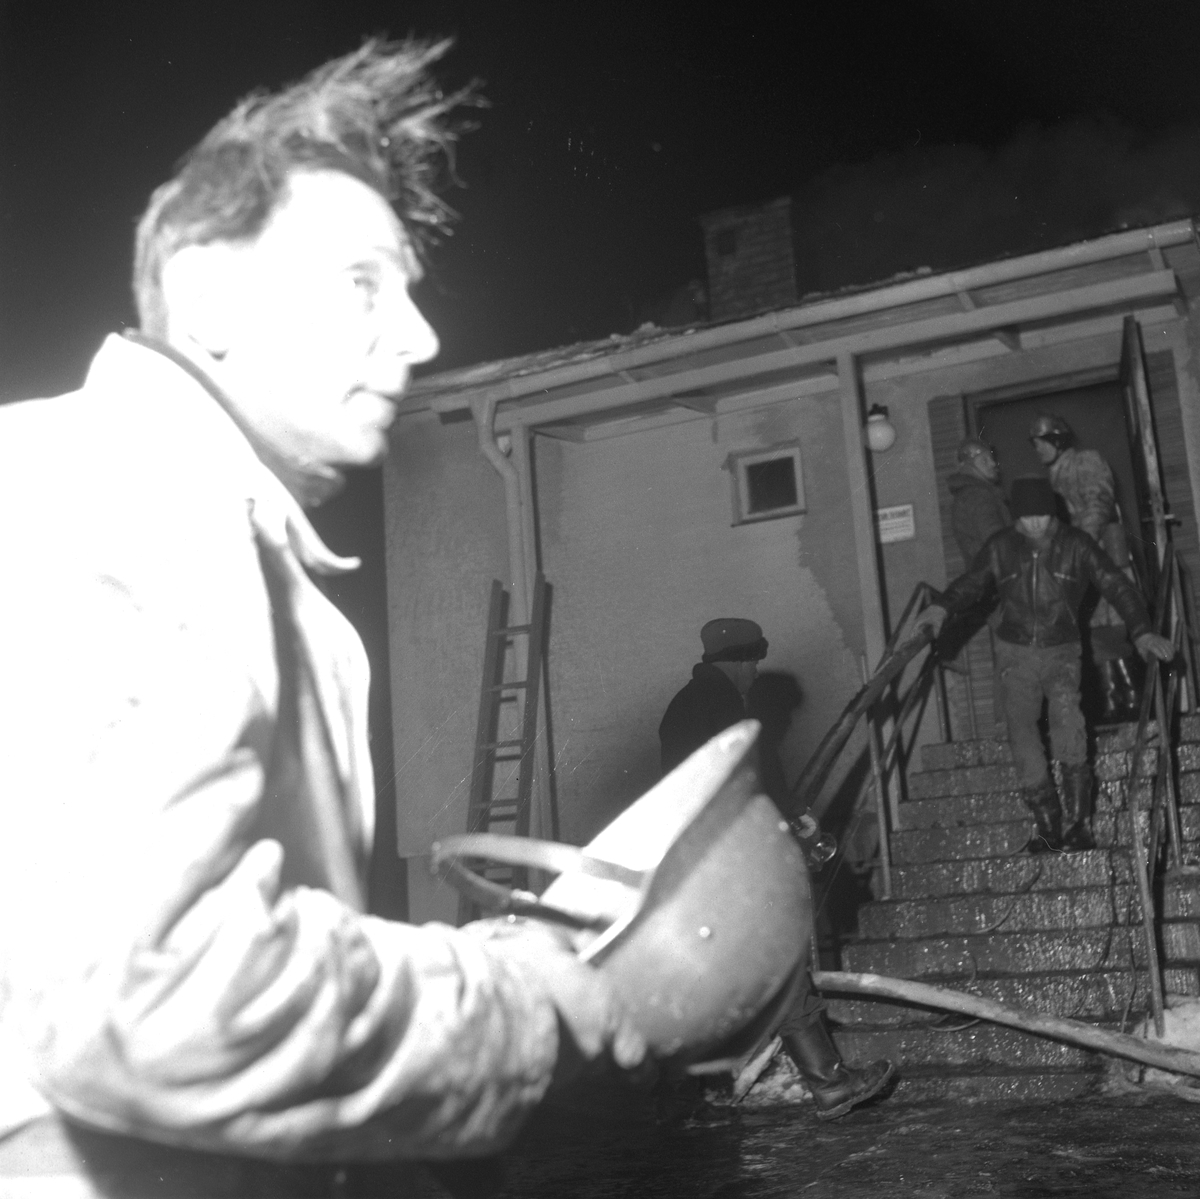 Brandexplosion i Lillån.
14 januari 1959.